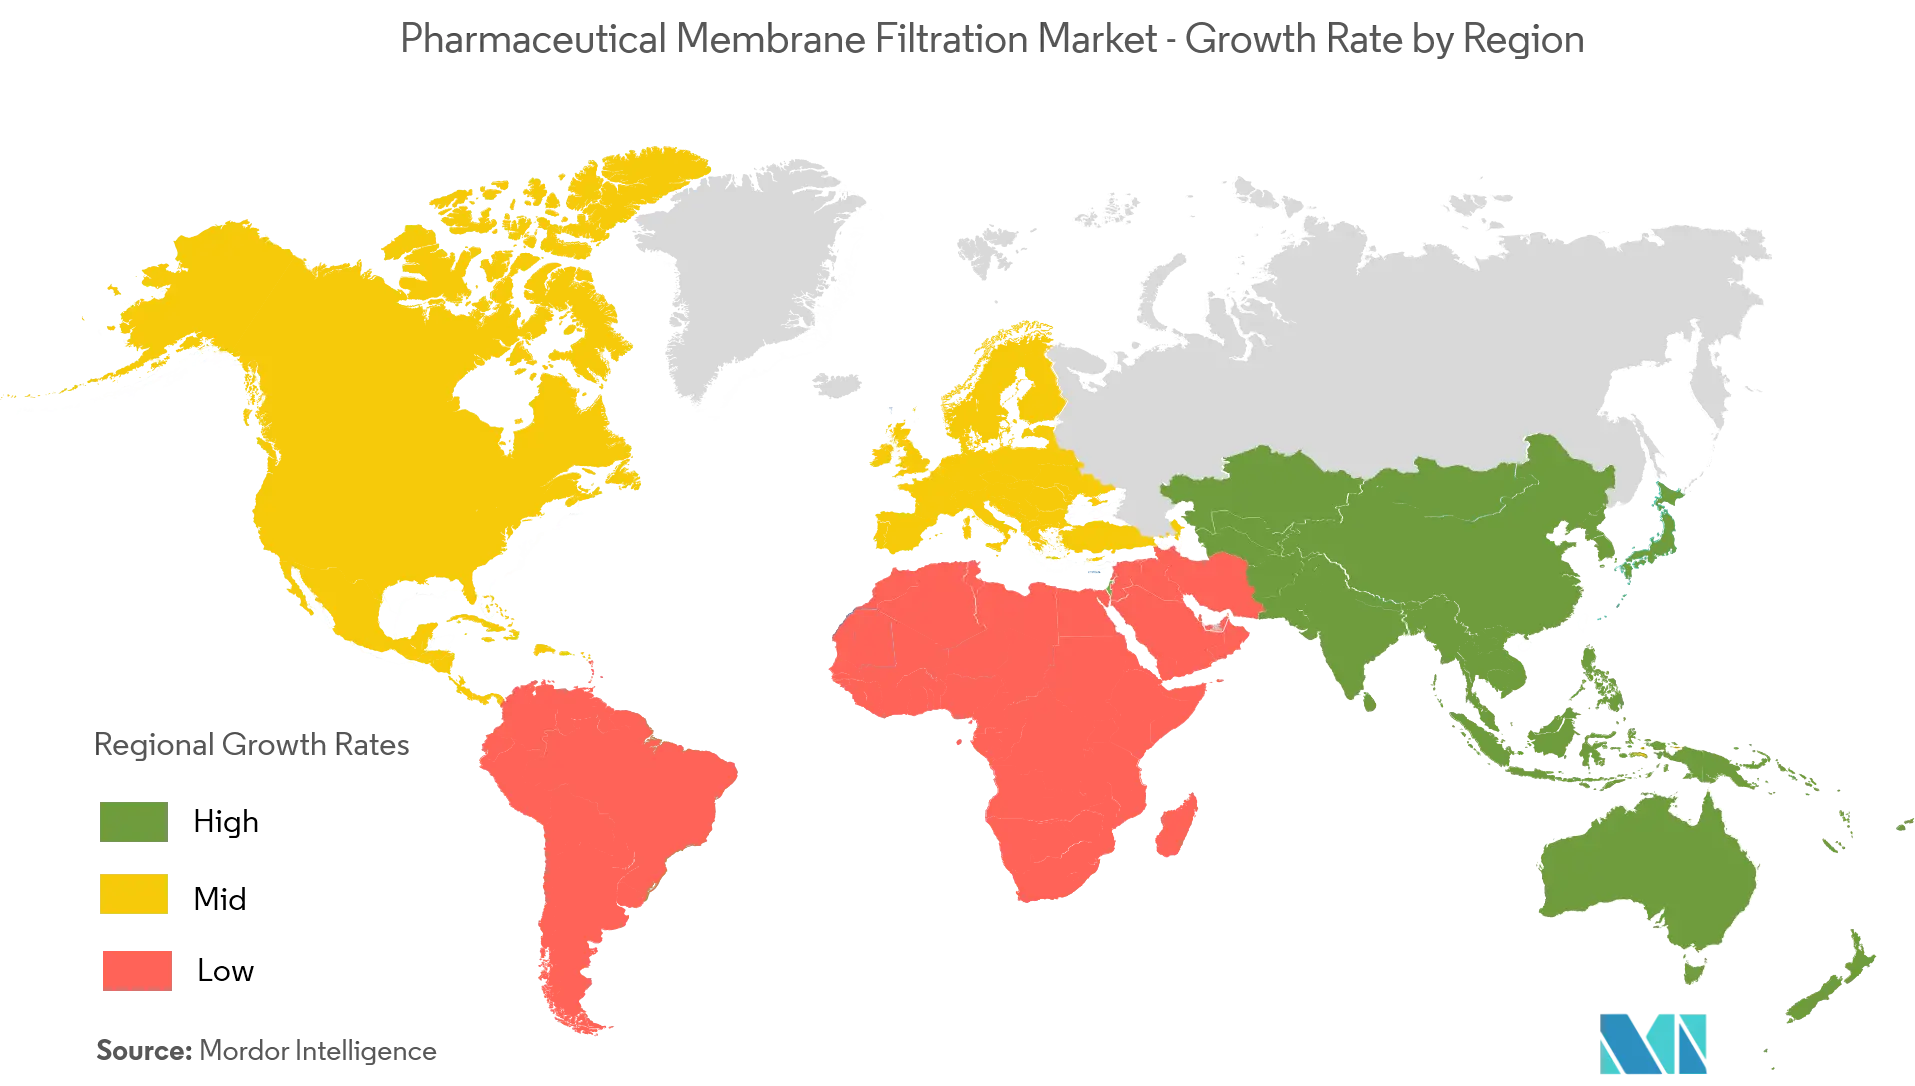 医薬品用メンブレンフィルター市場 - 地域別成長率